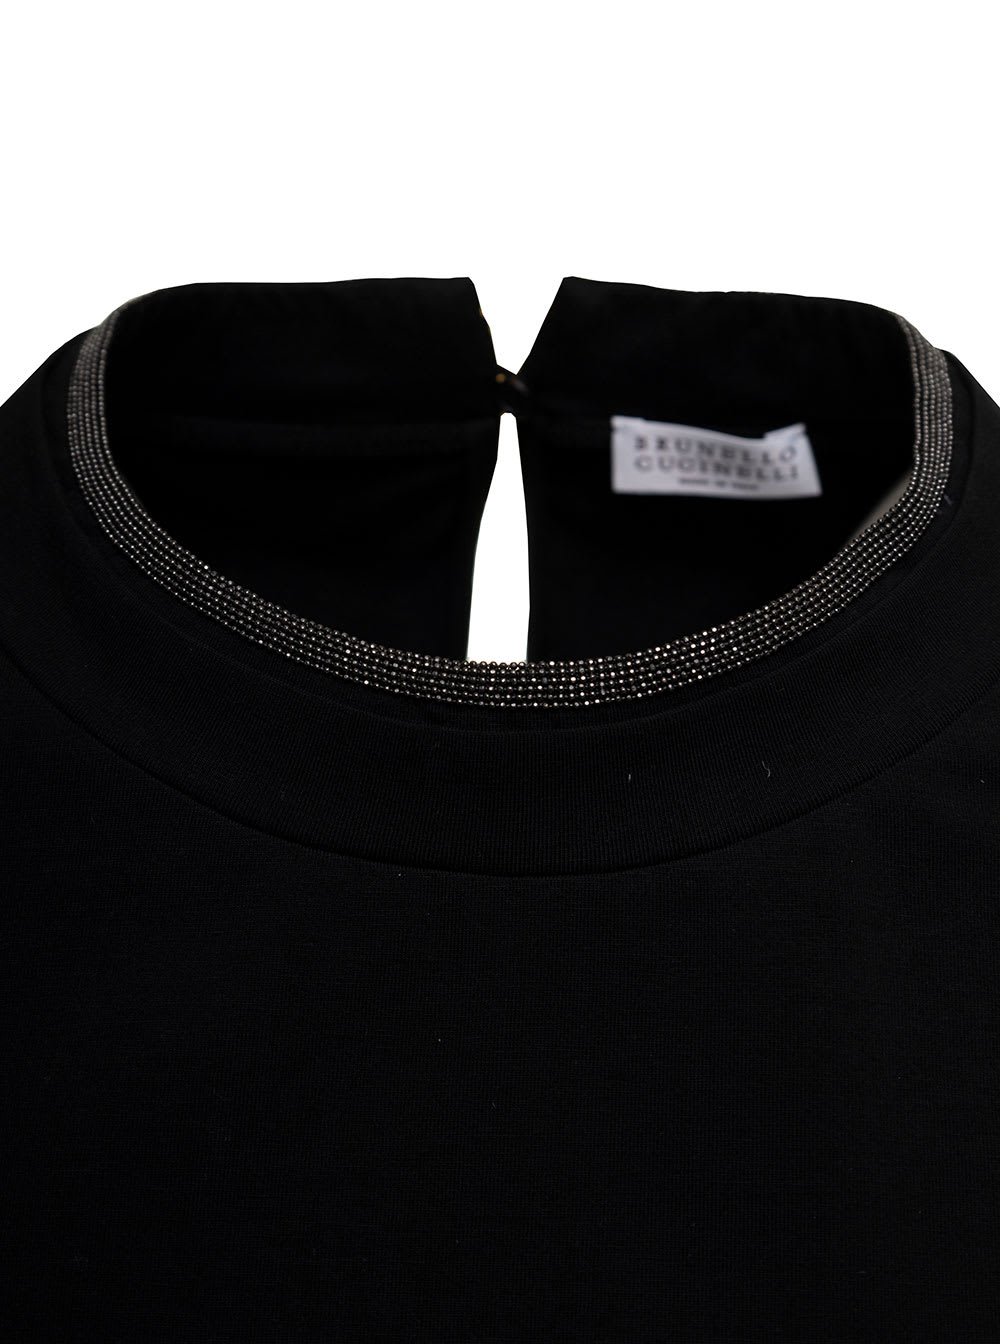 Shop Brunello Cucinelli Womans Black Cotton T-shirt With Monile Crew Neck